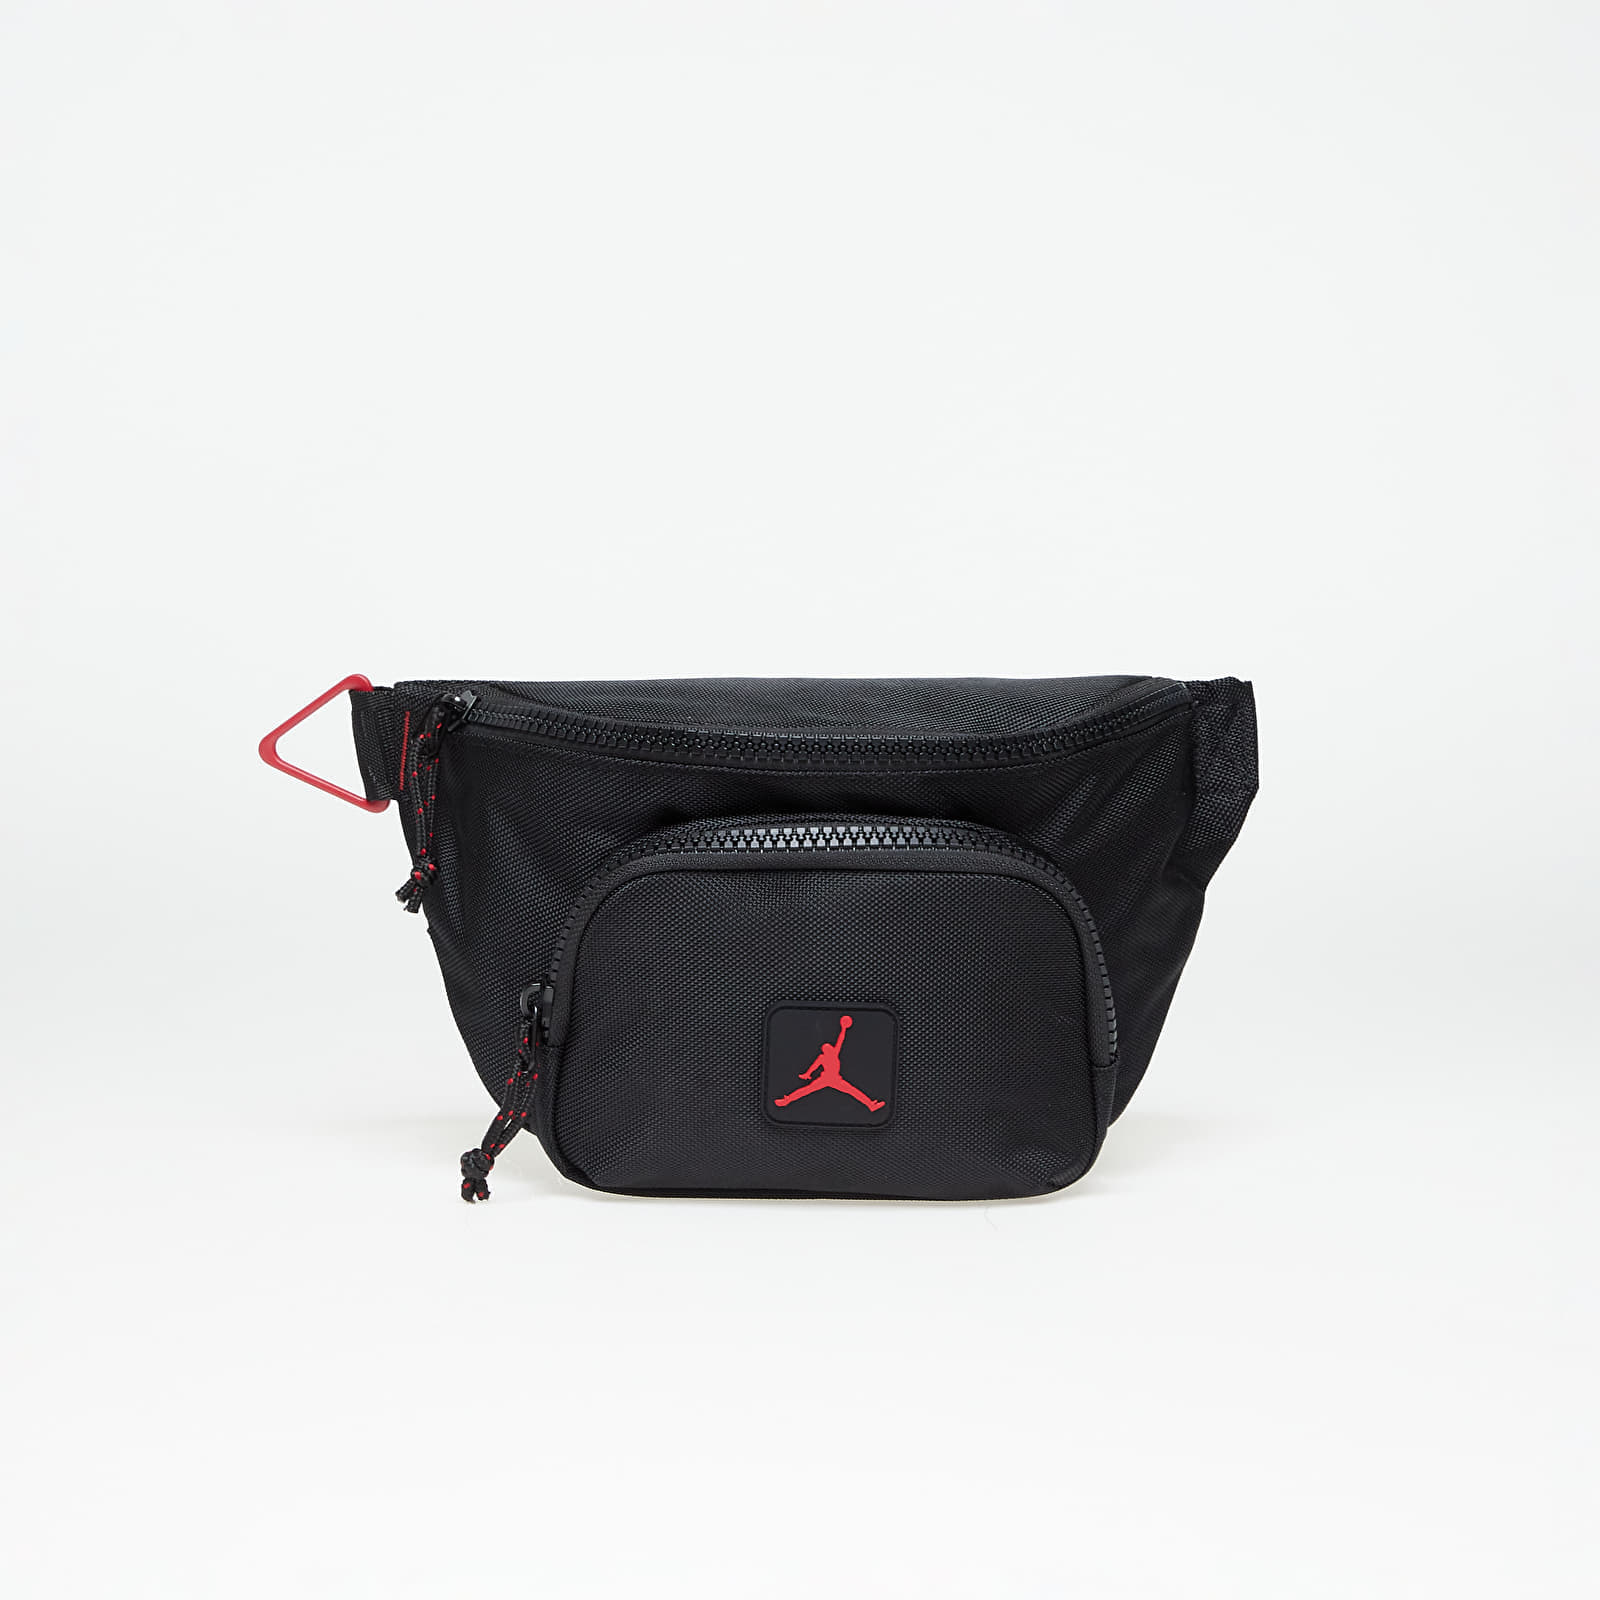 Хип чанти Jordan Rise Cross Body Bag Black